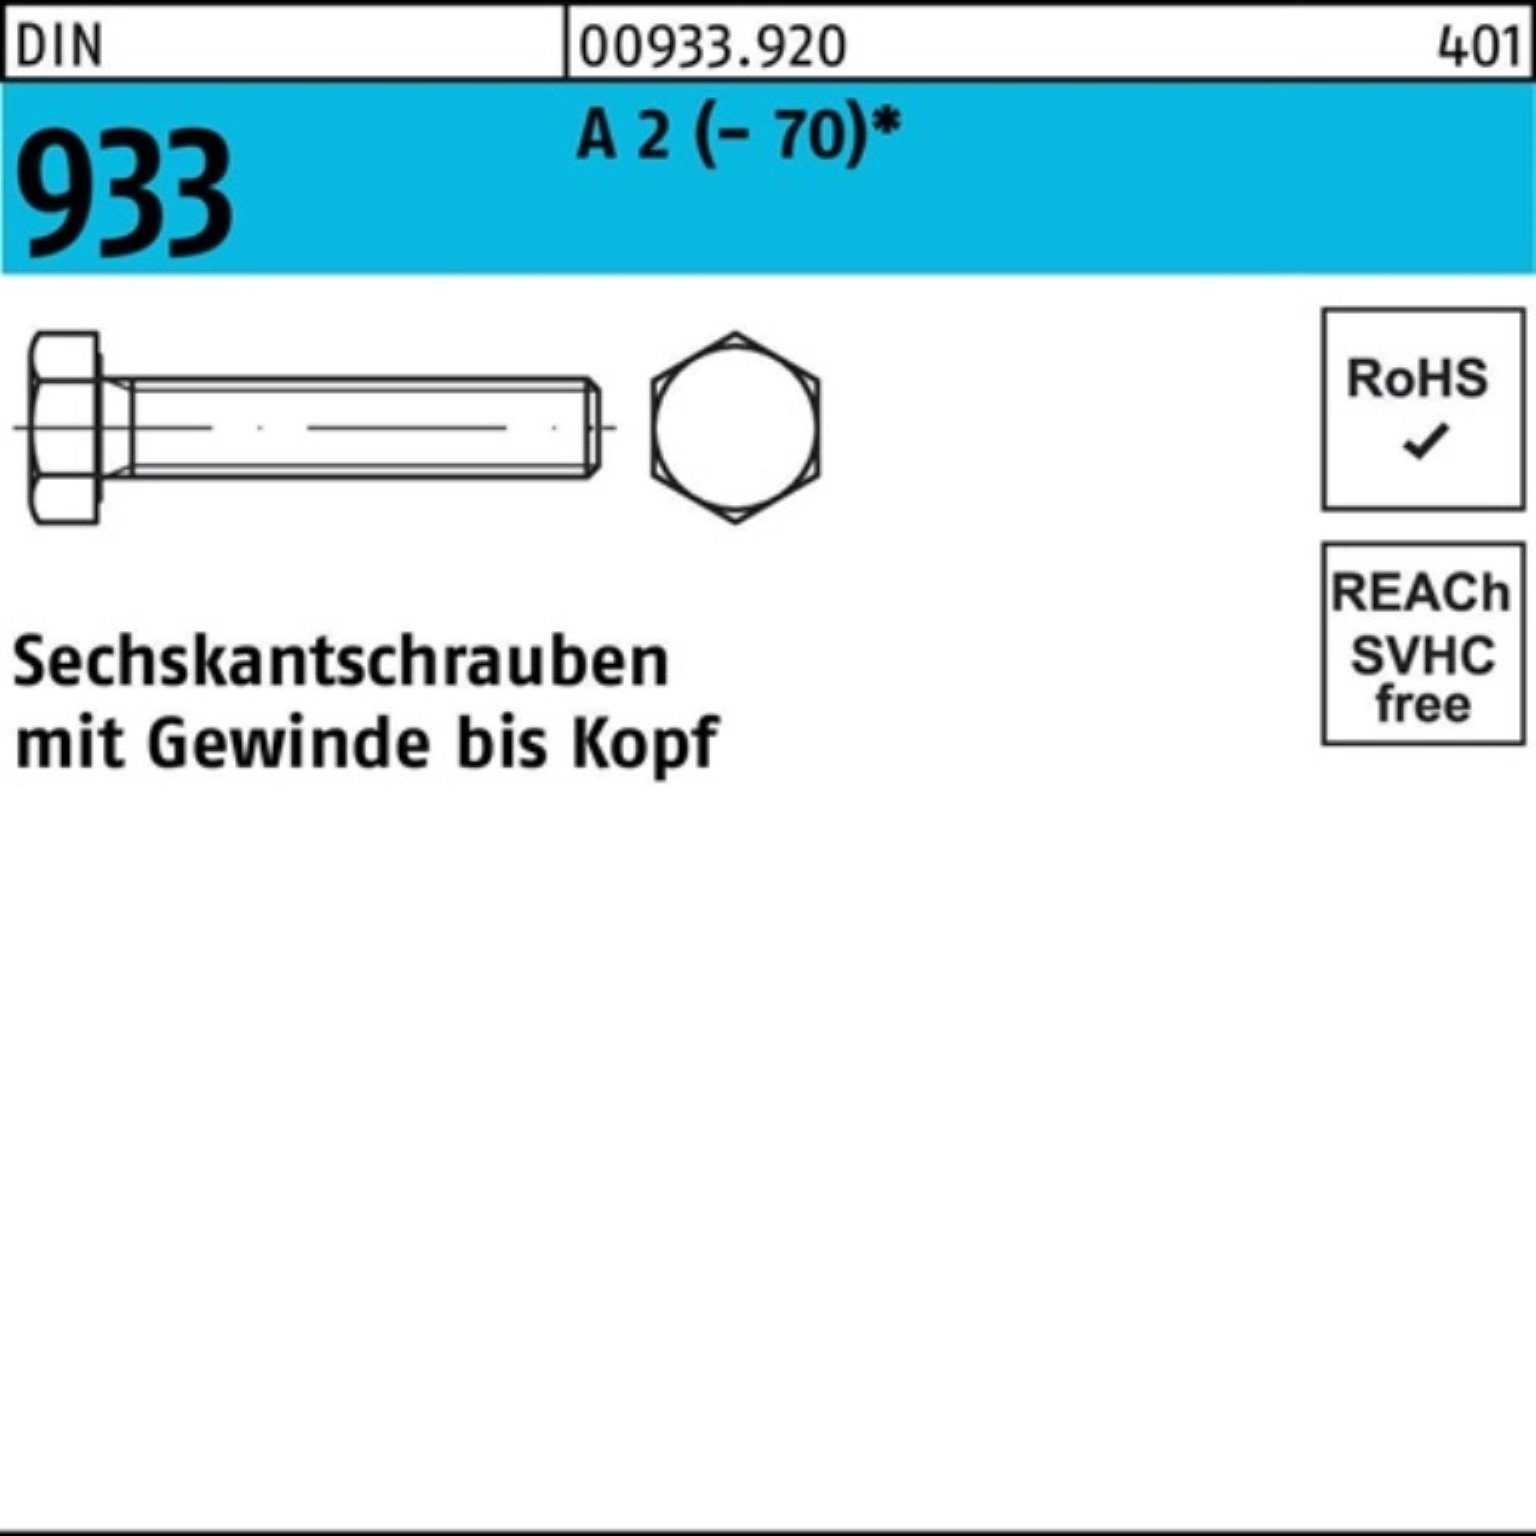 Reyher Sechskantschraube 100er Pack Sechskantschraube 933 DIN Stück M8x 30 VG A 2 (70) D 100